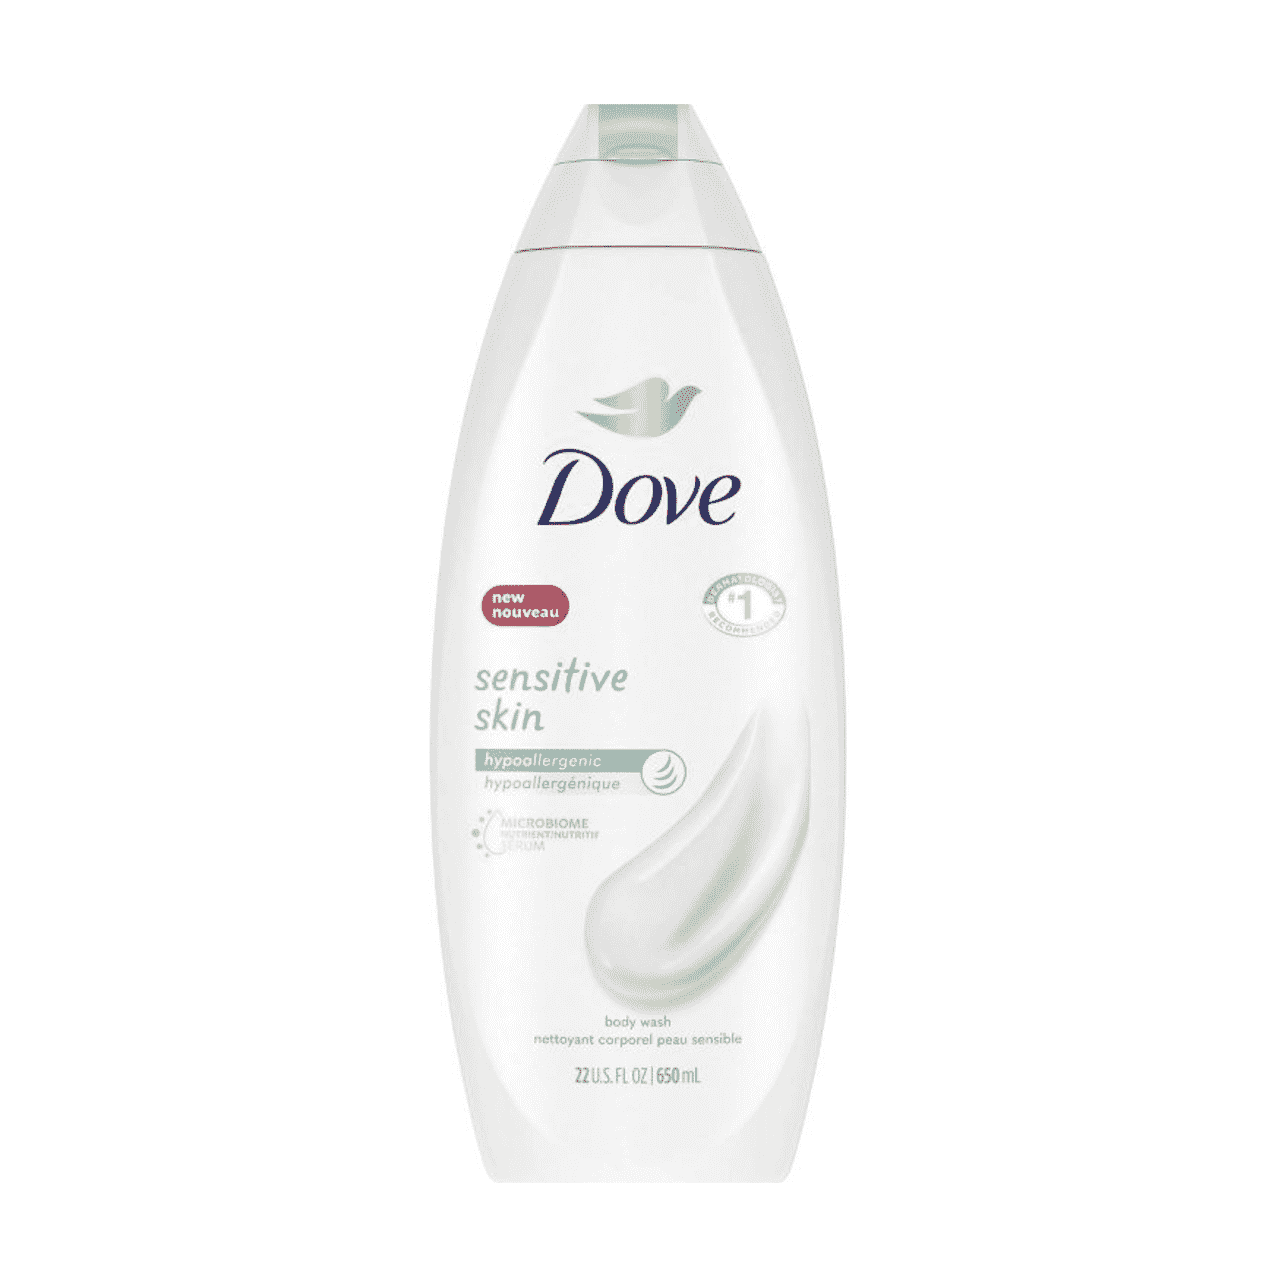 Dove Sensitive Skin Body Wash abgerundete weiße Flasche auf weißem Hintergrund